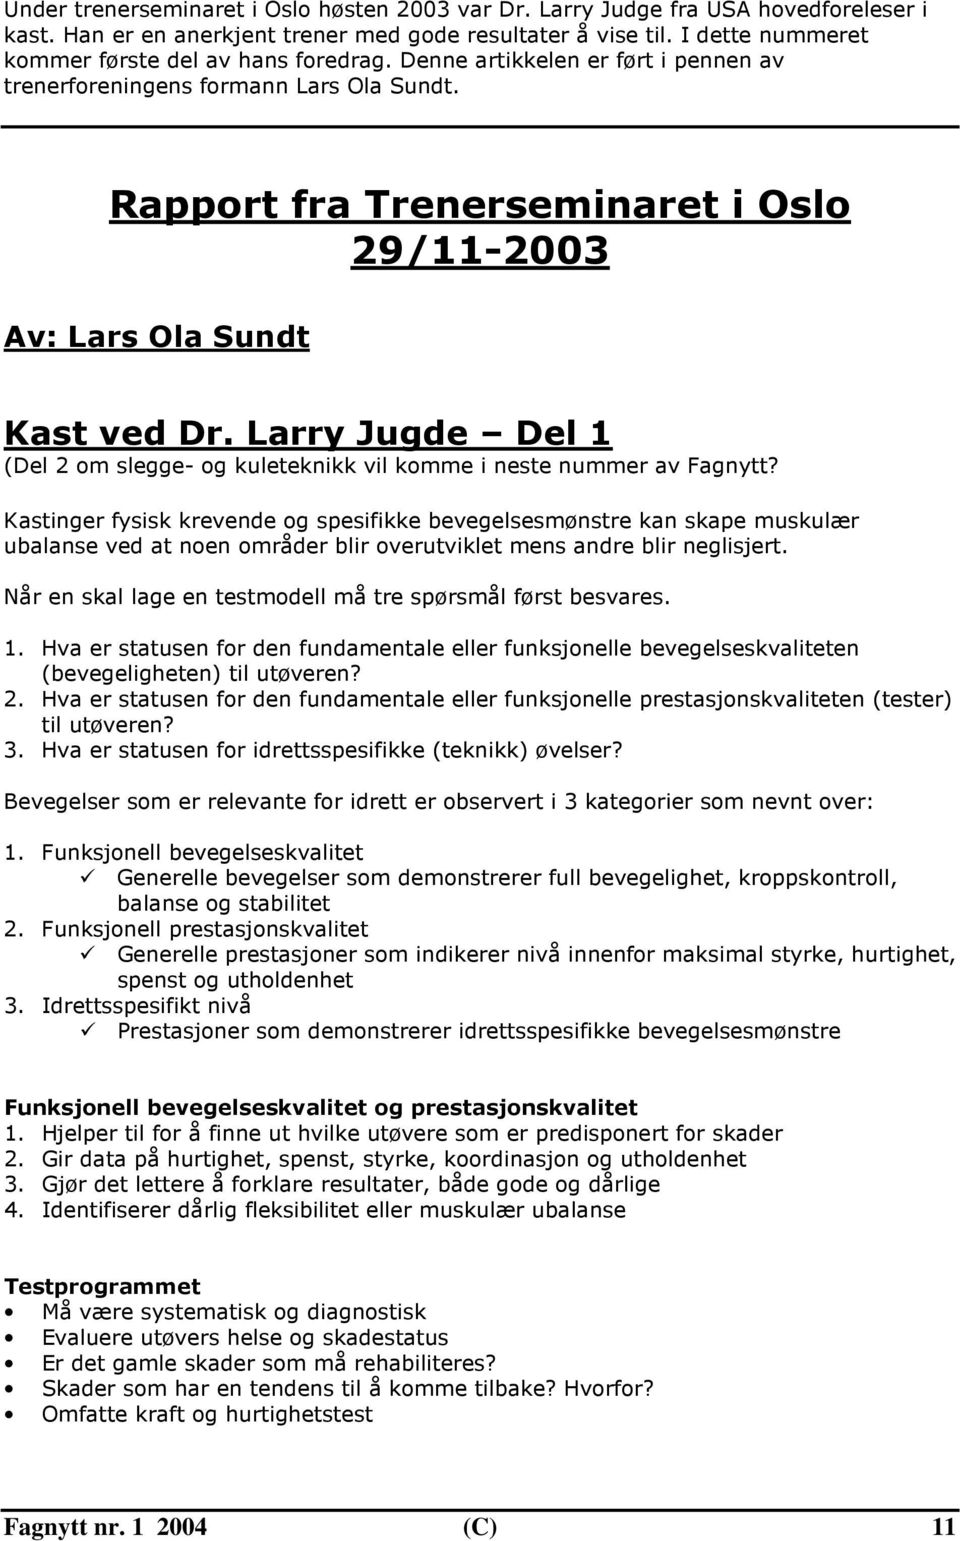 Rapport fra Trenerseminaret i Oslo 29/11-2003 Av: Lars Ola Sundt Kast ved Dr. Larry Jugde Del 1 (Del 2 om slegge- og kuleteknikk vil komme i neste nummer av Fagnytt?